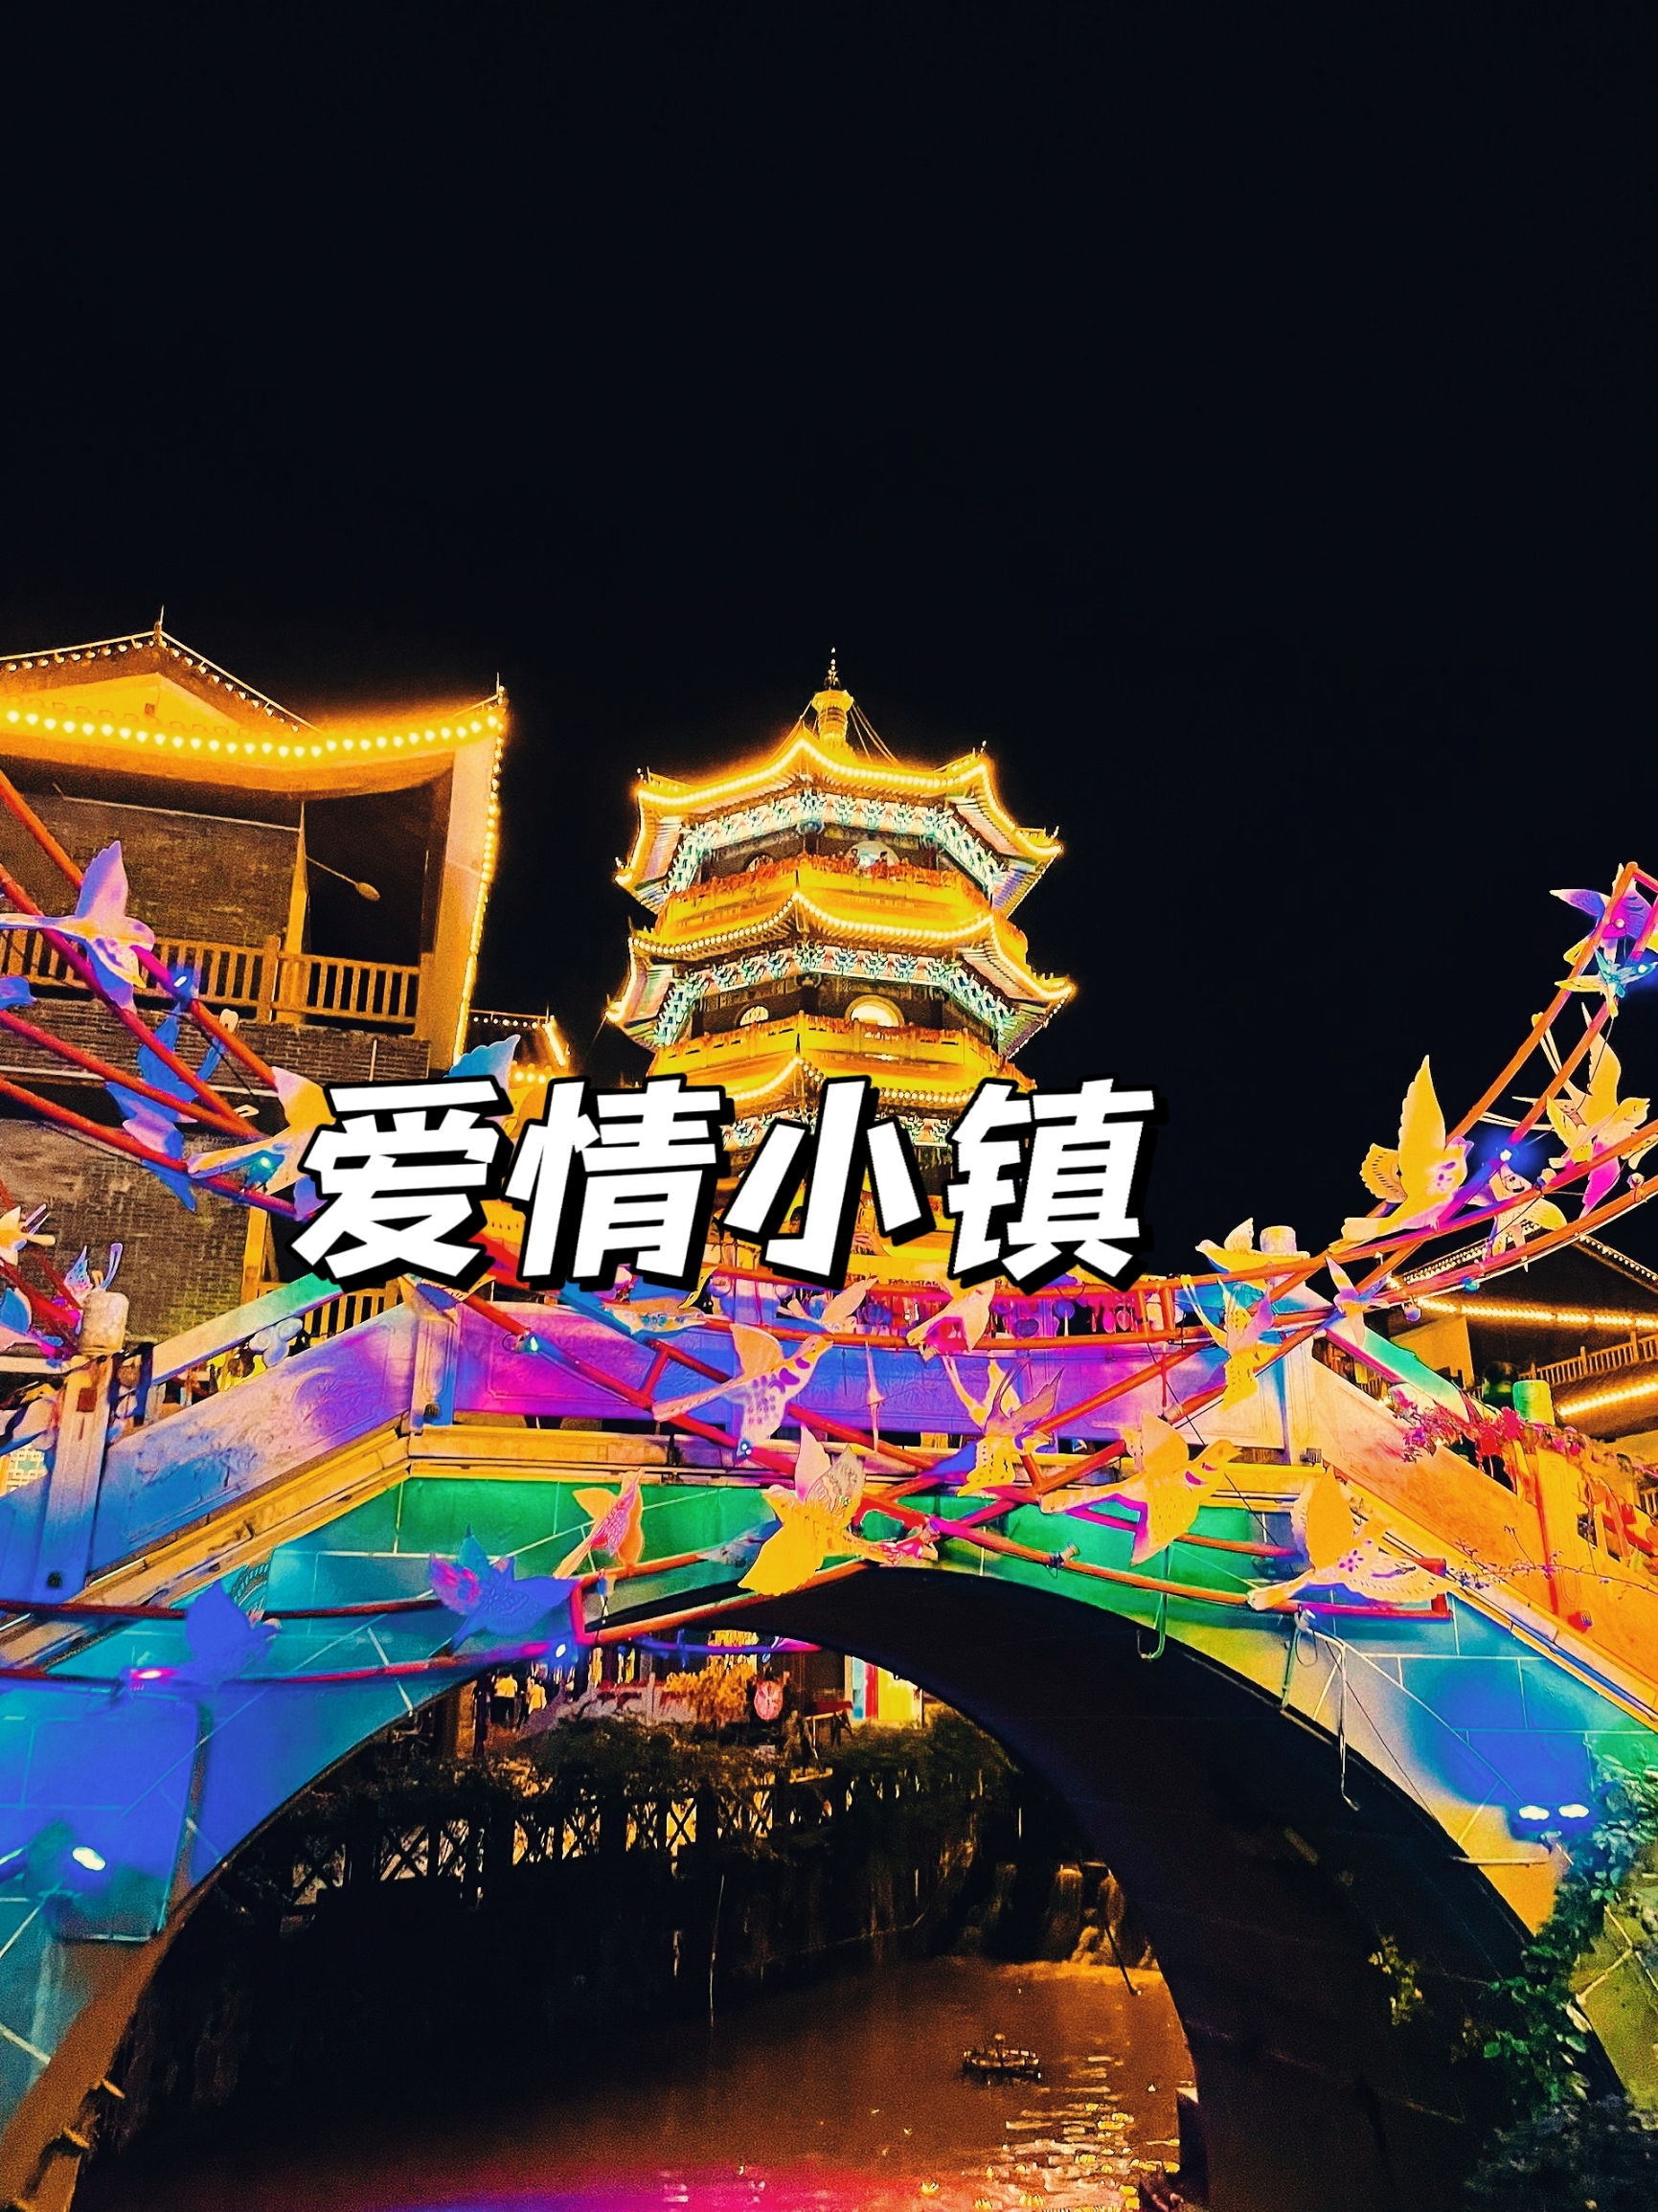 湖南永州江华县的爱情小镇:是个最浪漫的湖南江华瑶都水街